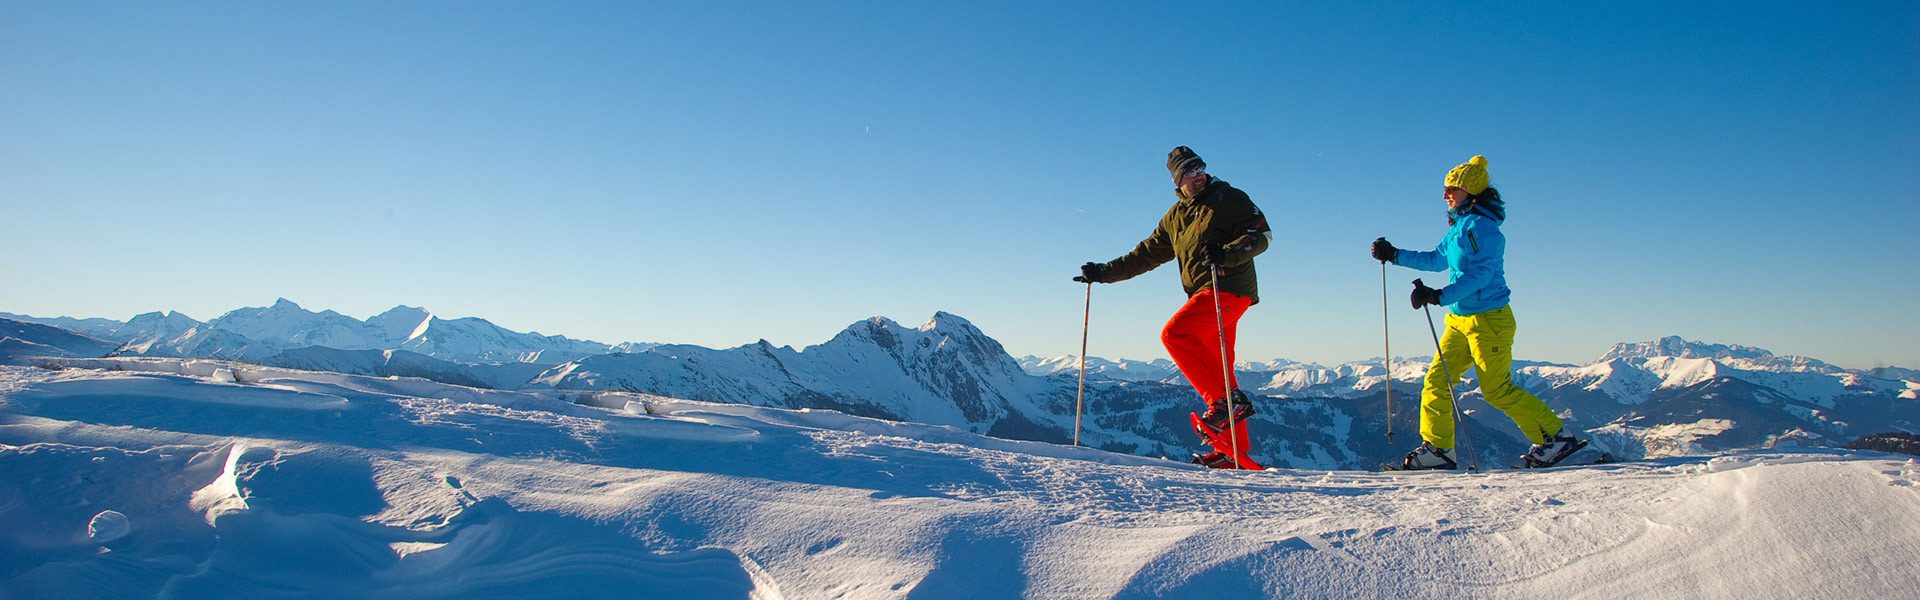 Schneeschuhwandern - Winterurlaub in Großarl, Ski amadé